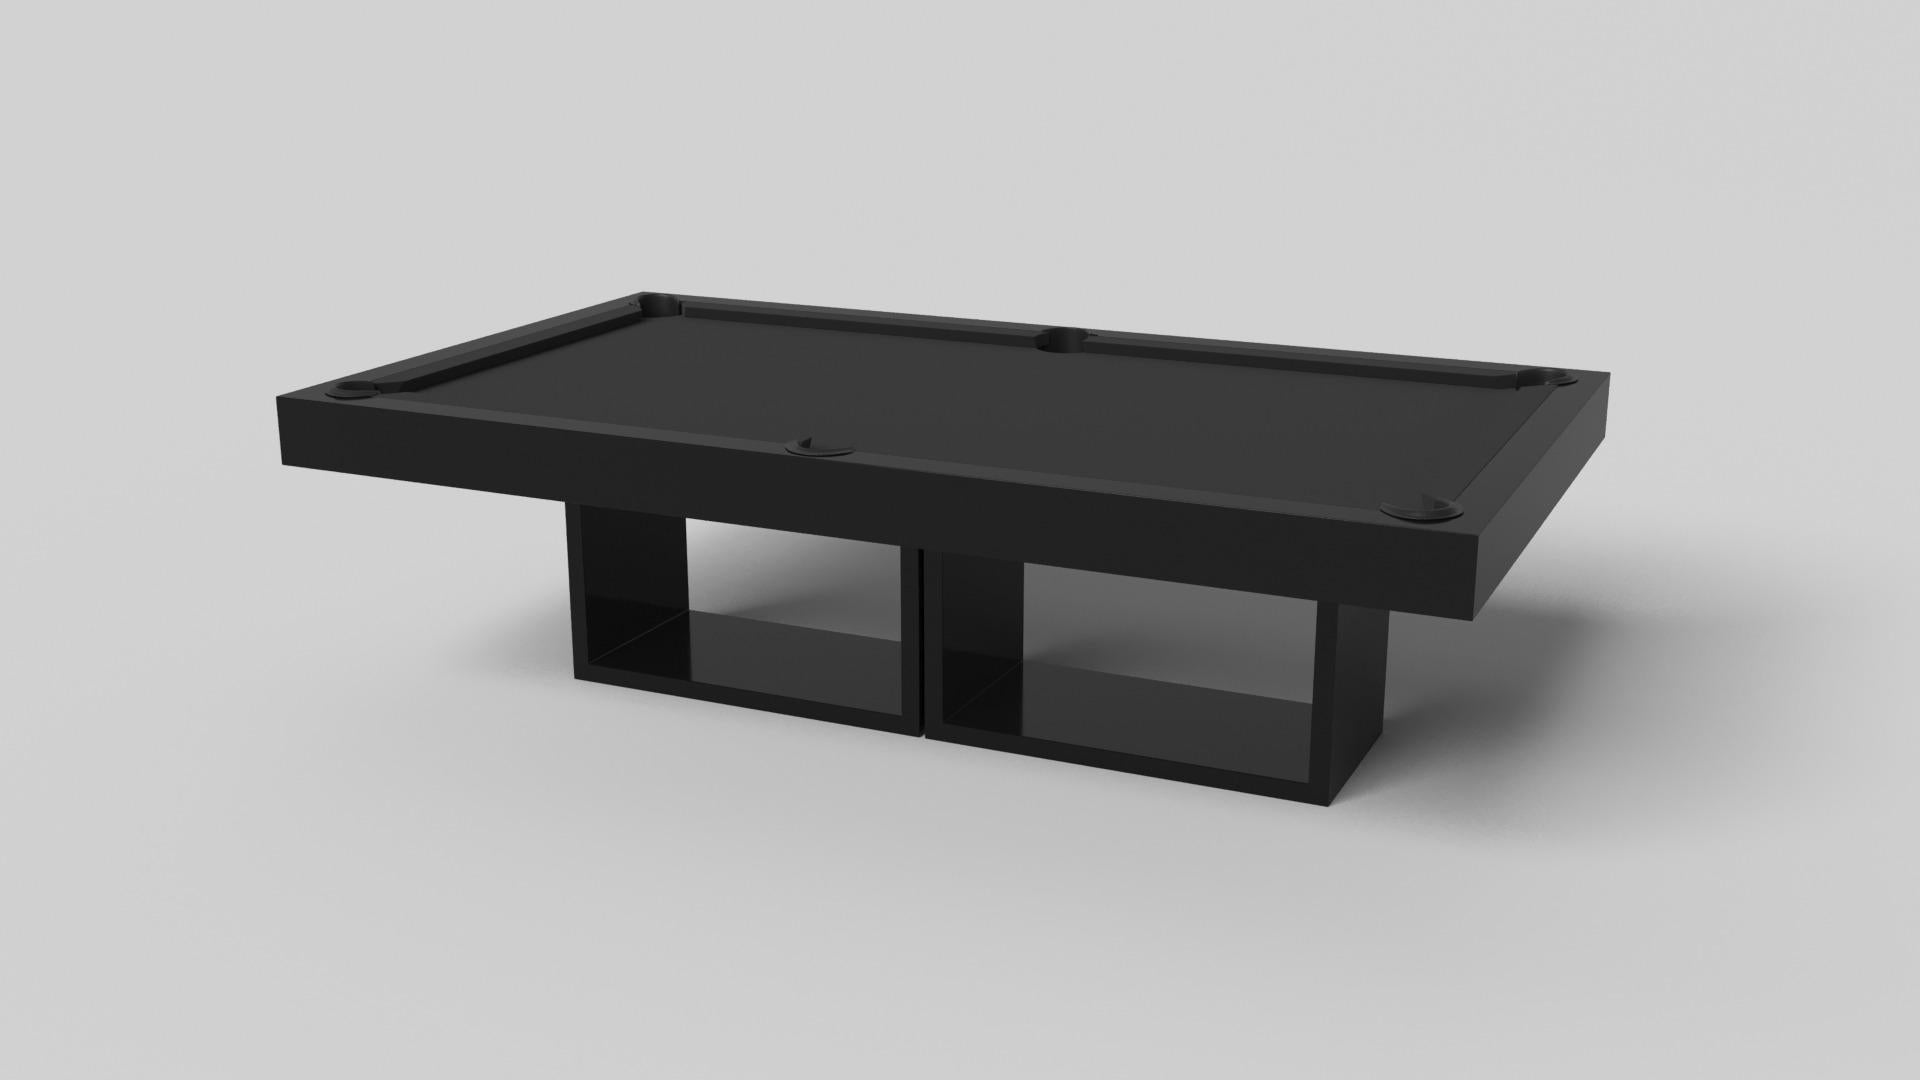 Dieser handgefertigte Billardtisch wird von zwei offenen, rechteckigen Sockeln getragen und ist mit seiner Kombination aus einfachen, geometrischen Formen modern und minimalistisch. Von vorne betrachtet ist die Verwendung des negativen Raums